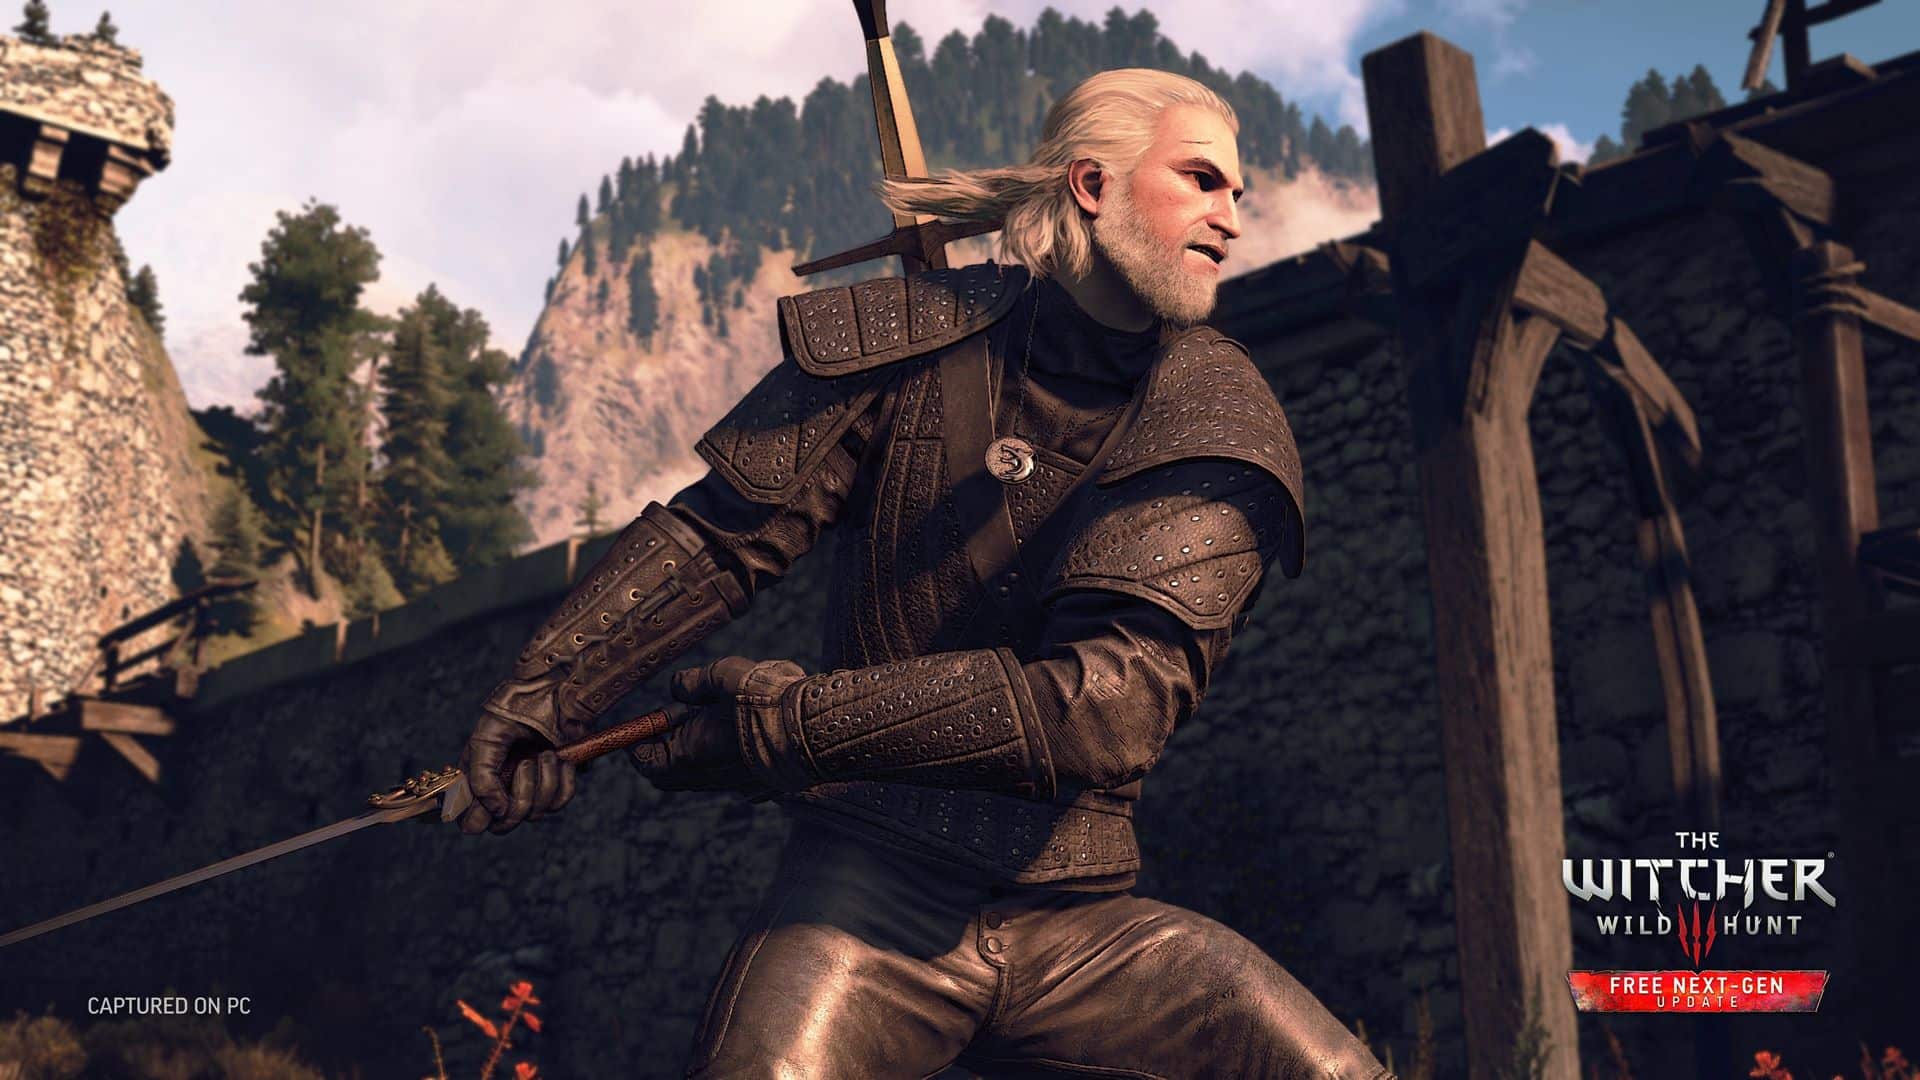 The Witcher 3 seria impossível no PS3 e no Xbox 360, diz produtora -  23/01/2014 - UOL Start